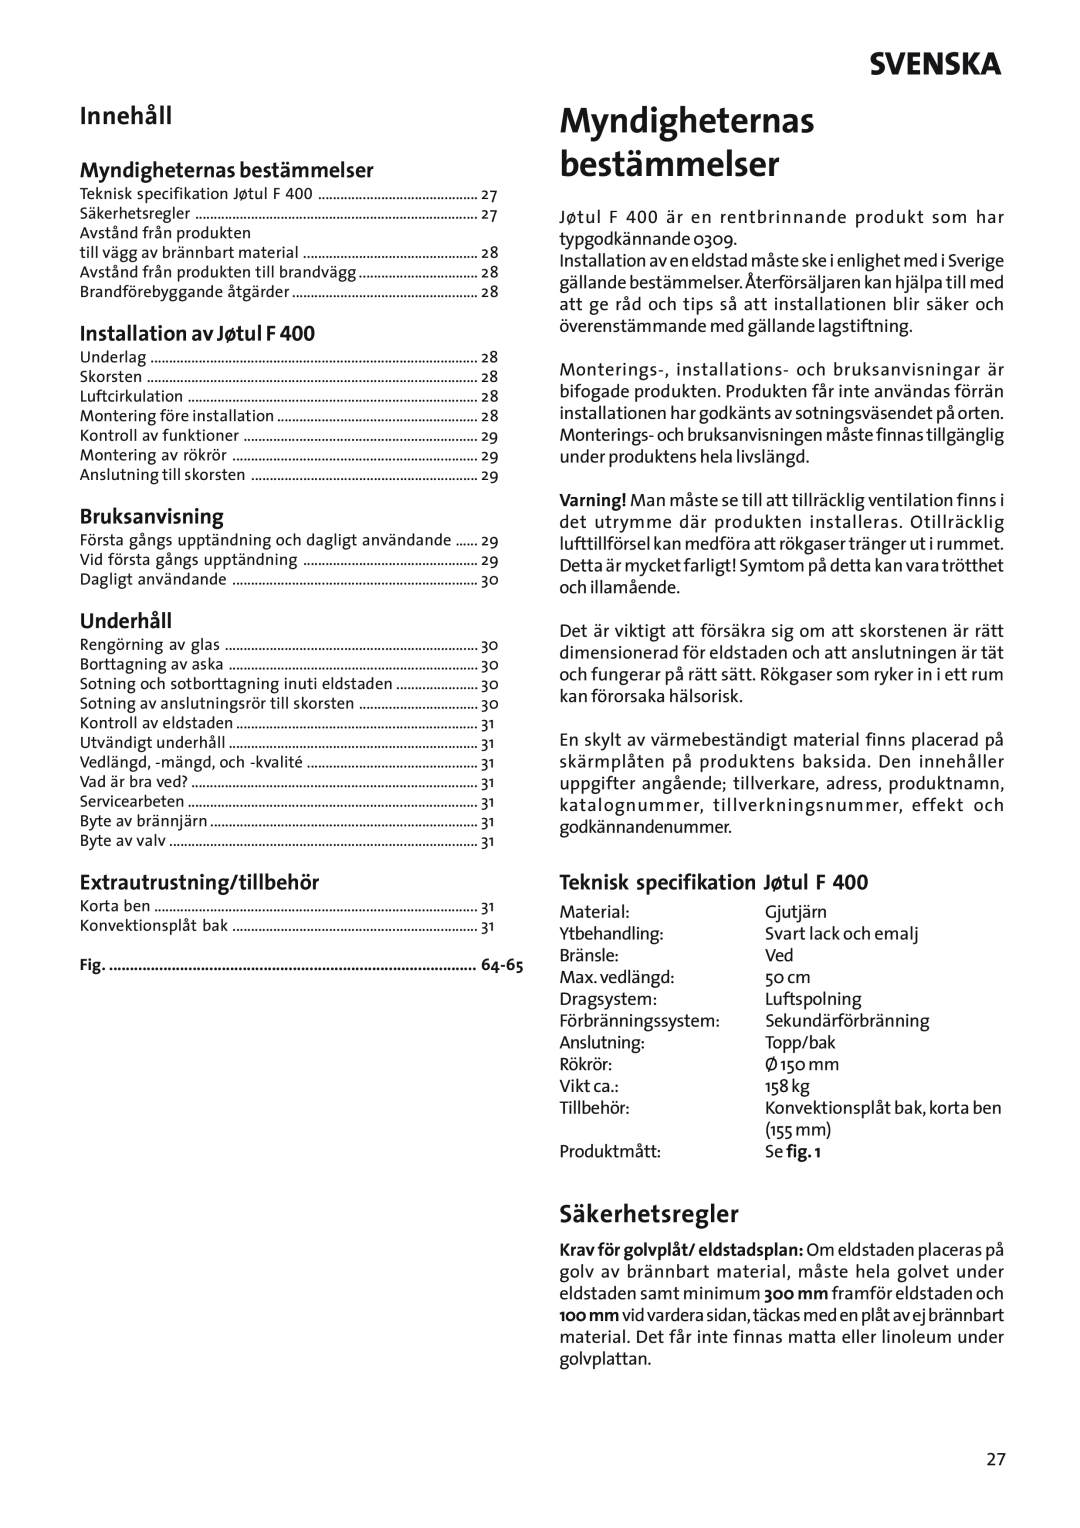 Jotul Woodstove F 400 Myndigheternas bestämmelser, Innehåll, Säkerhetsregler, Installation av Jøtul F, Underhåll, Svenska 